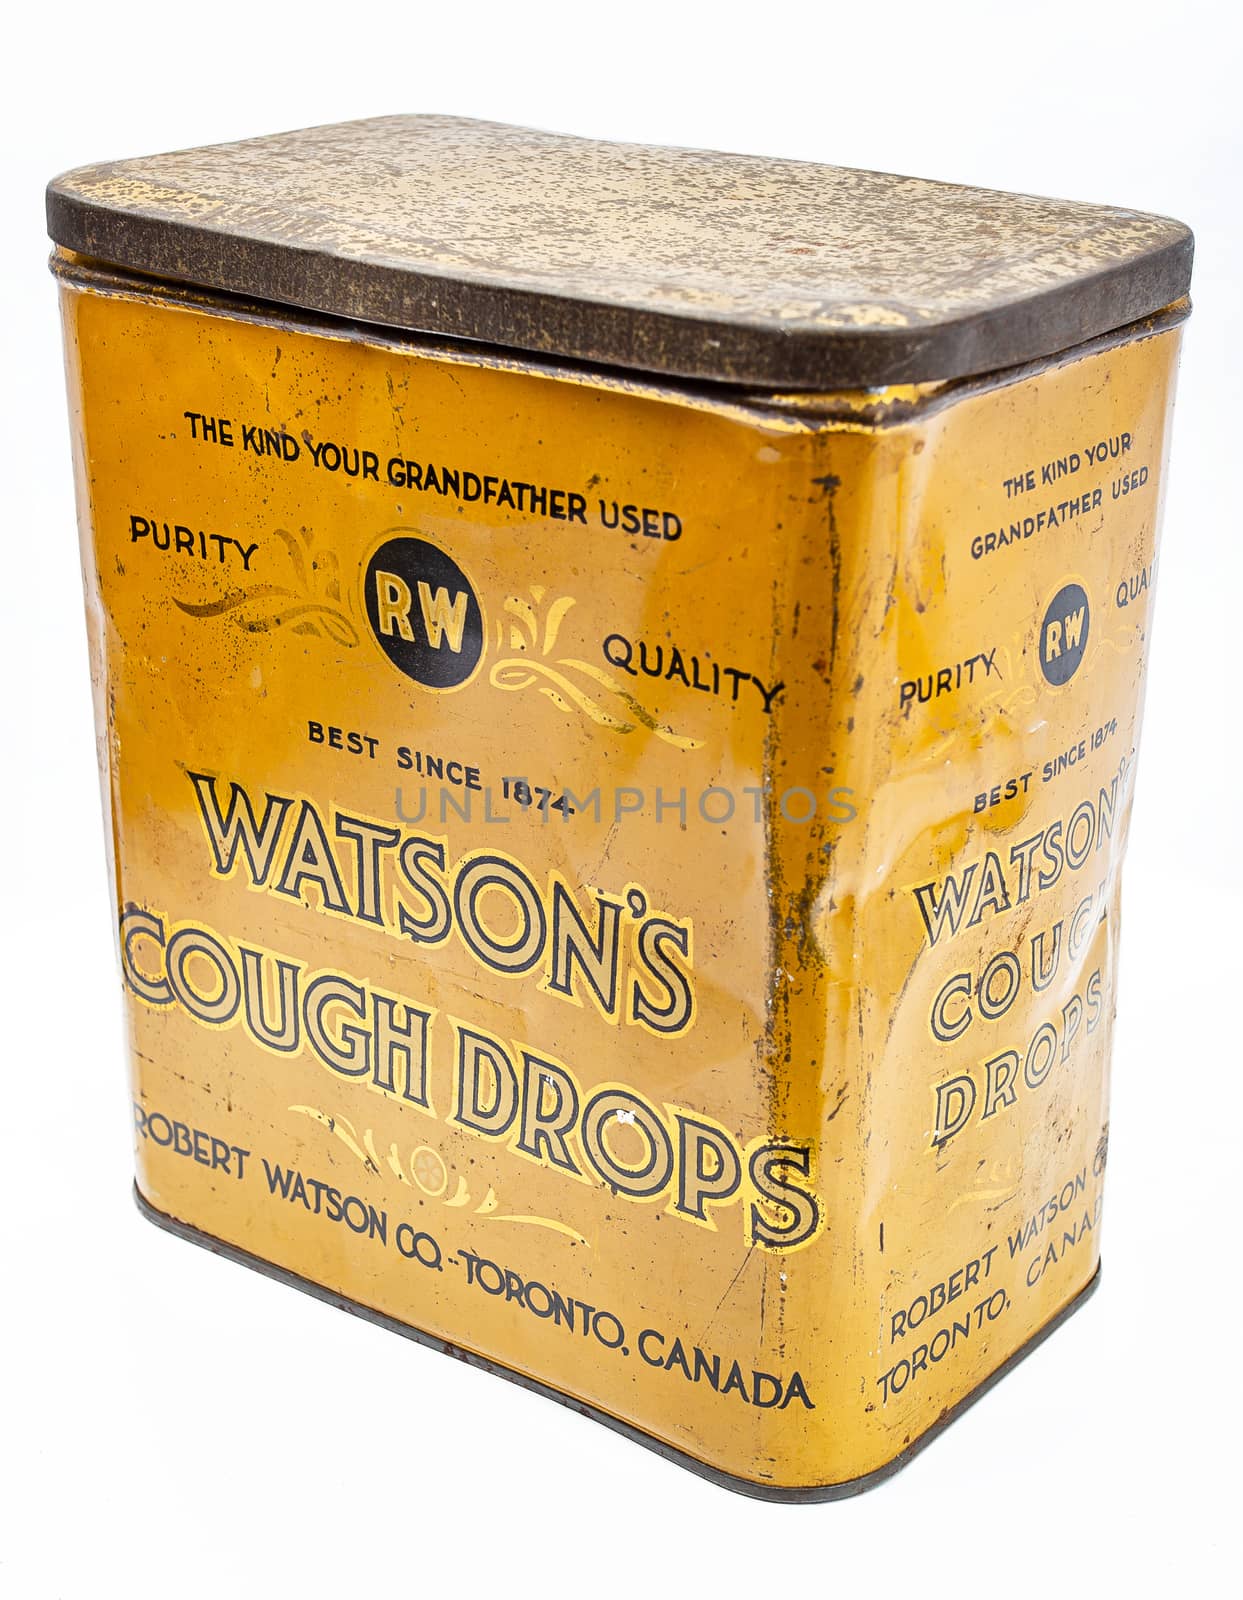 Vintage cough drop box by mypstudio